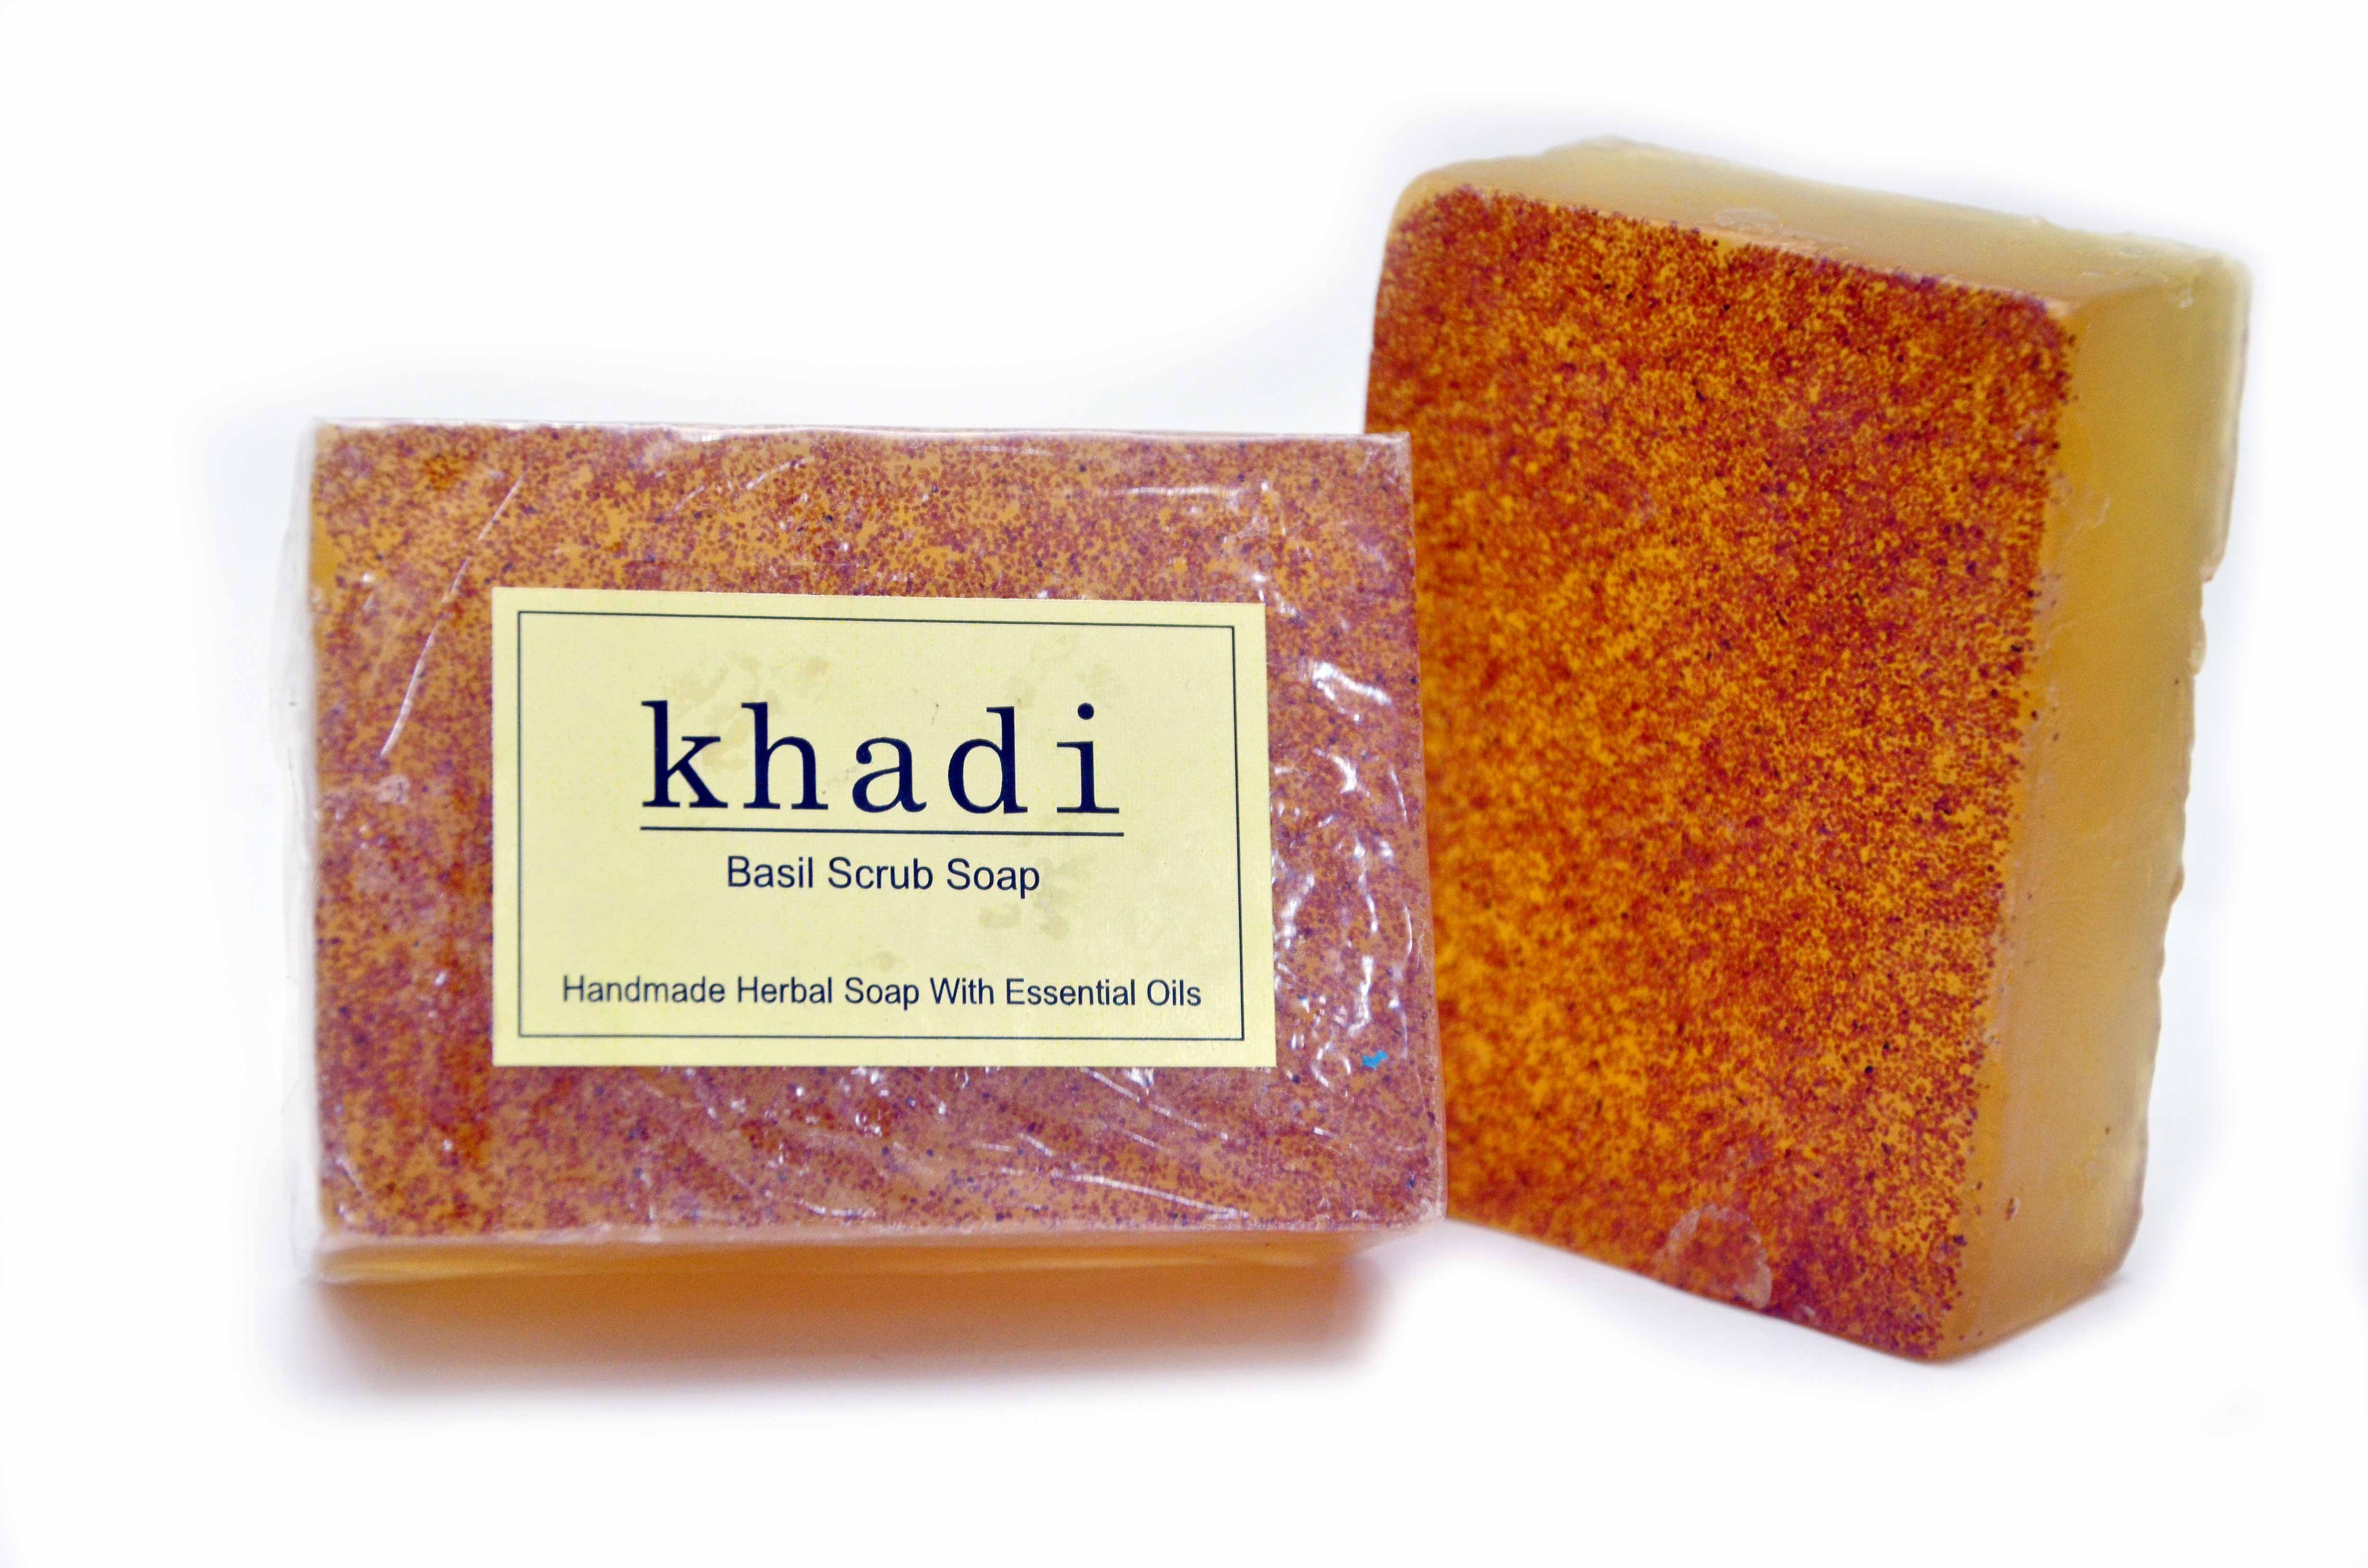 Vagad's Khadi Basil Scrub Soap